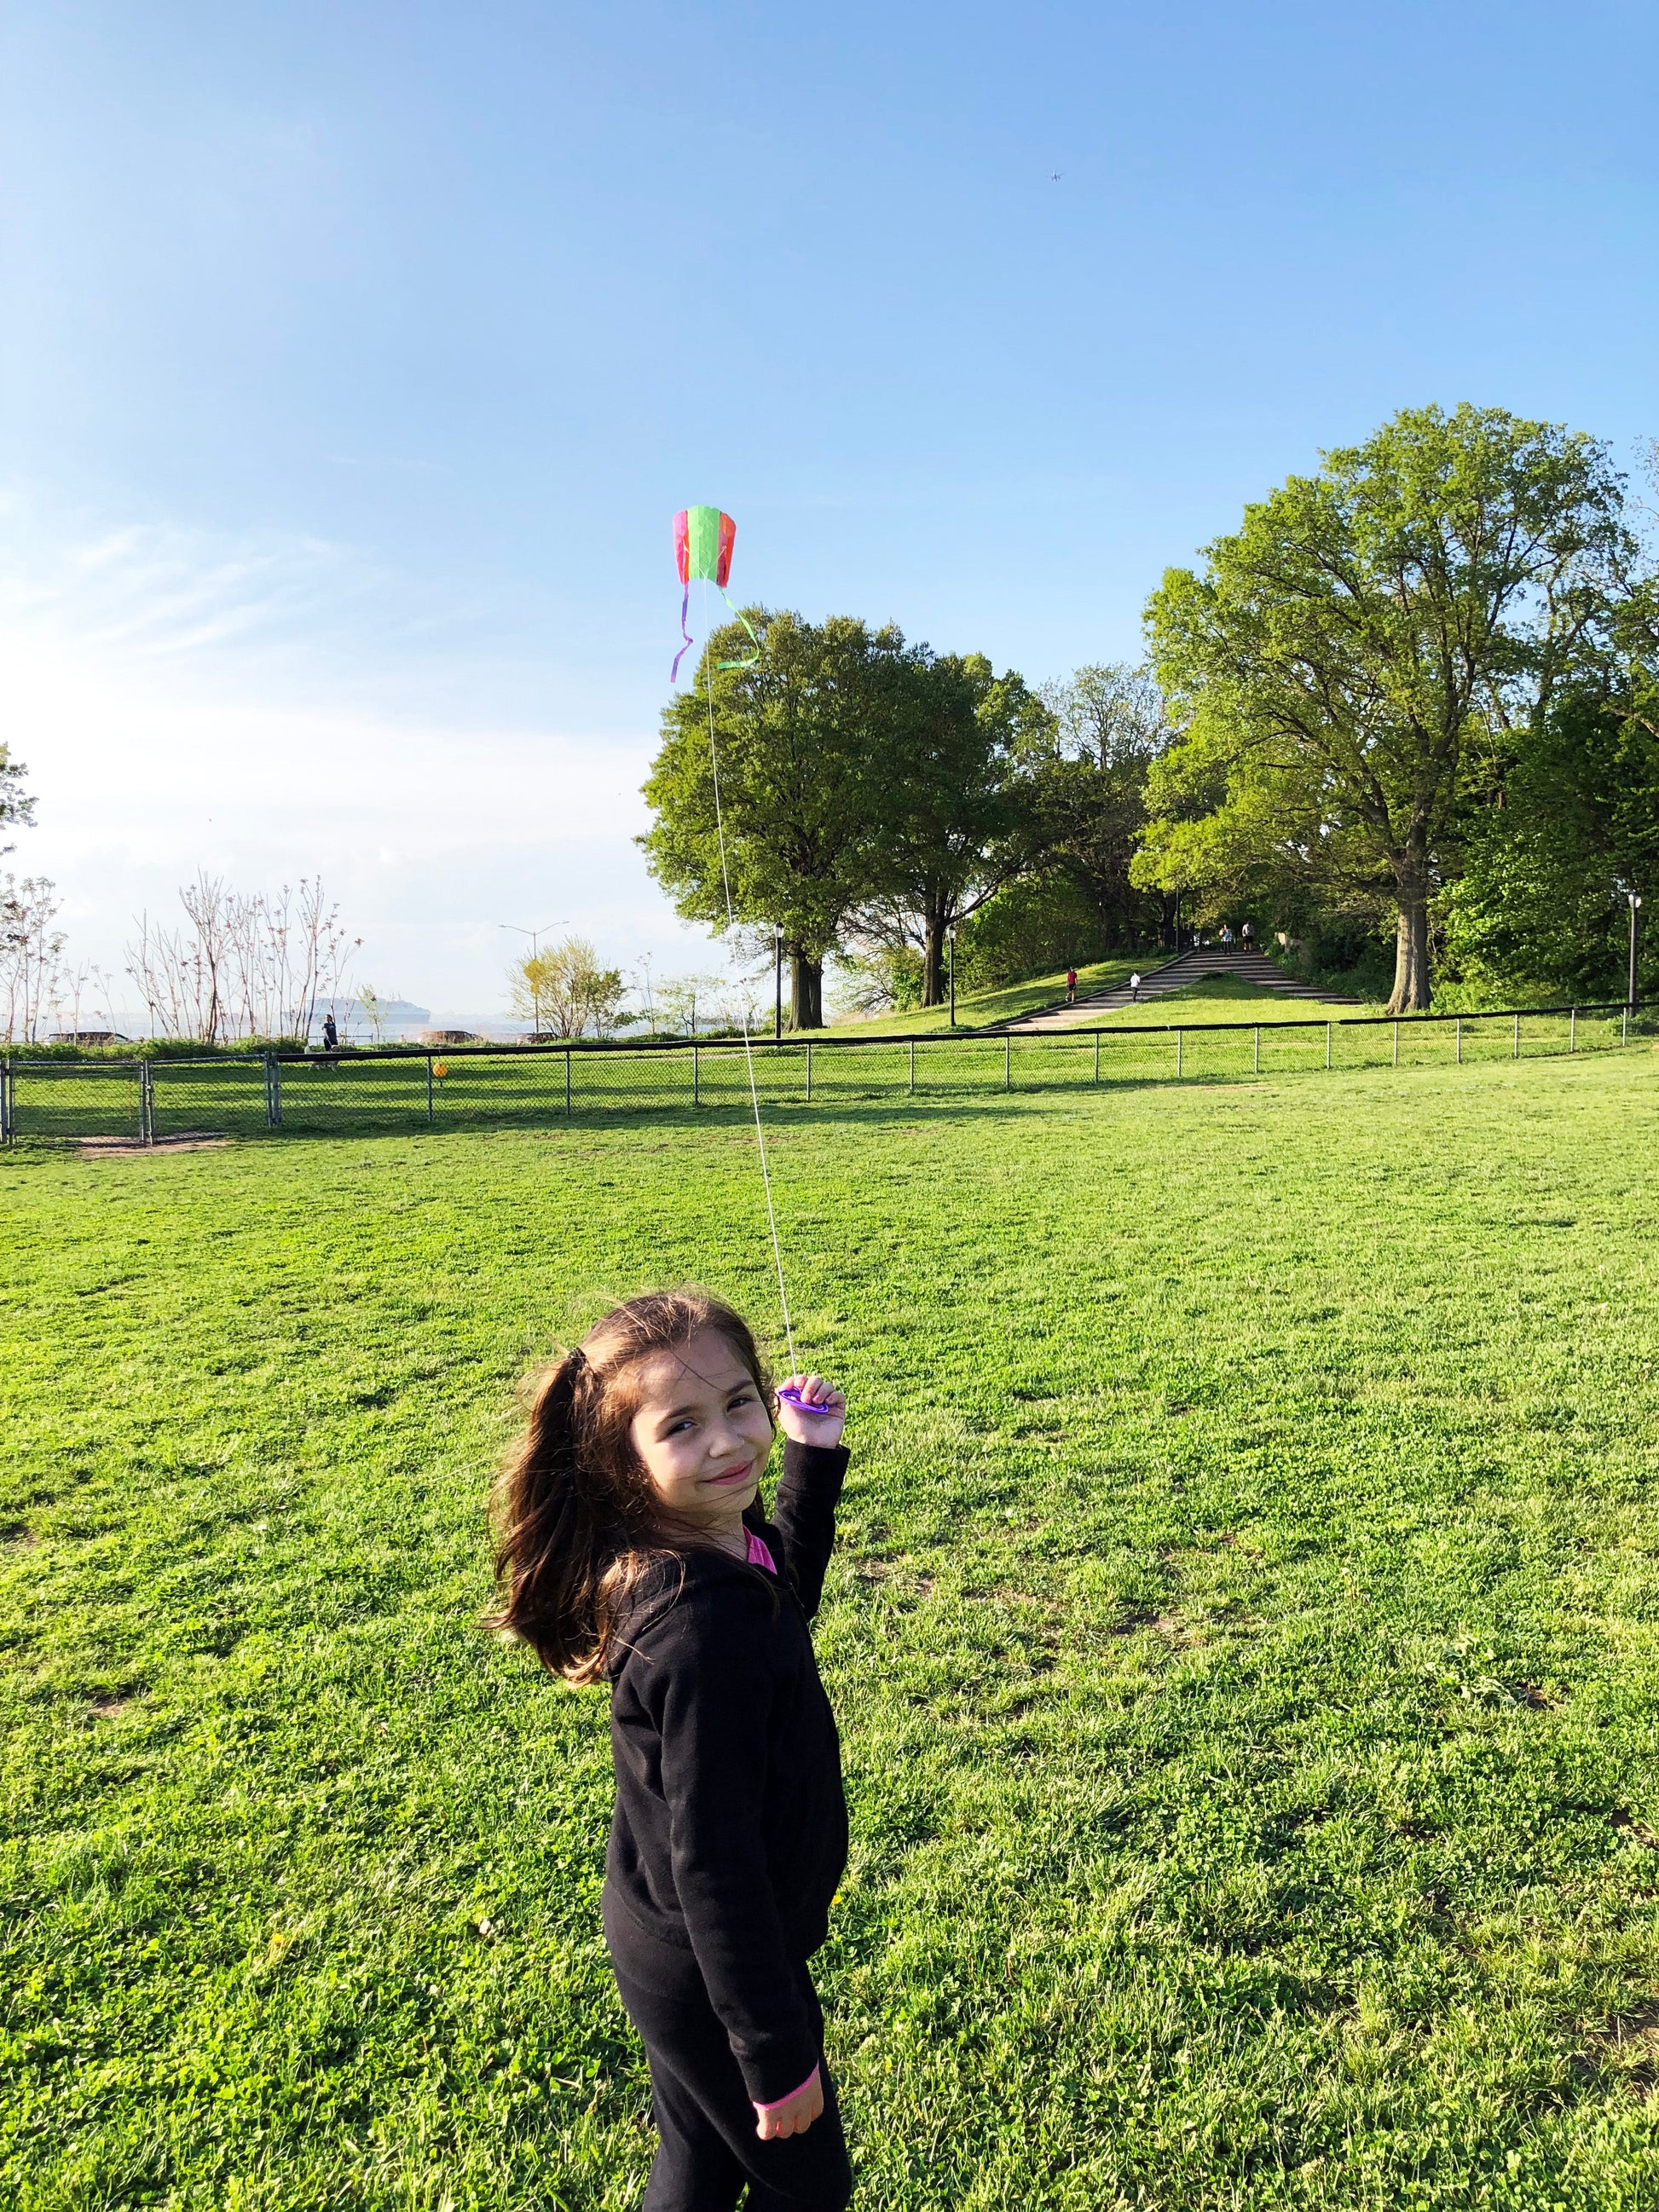 child flying kite